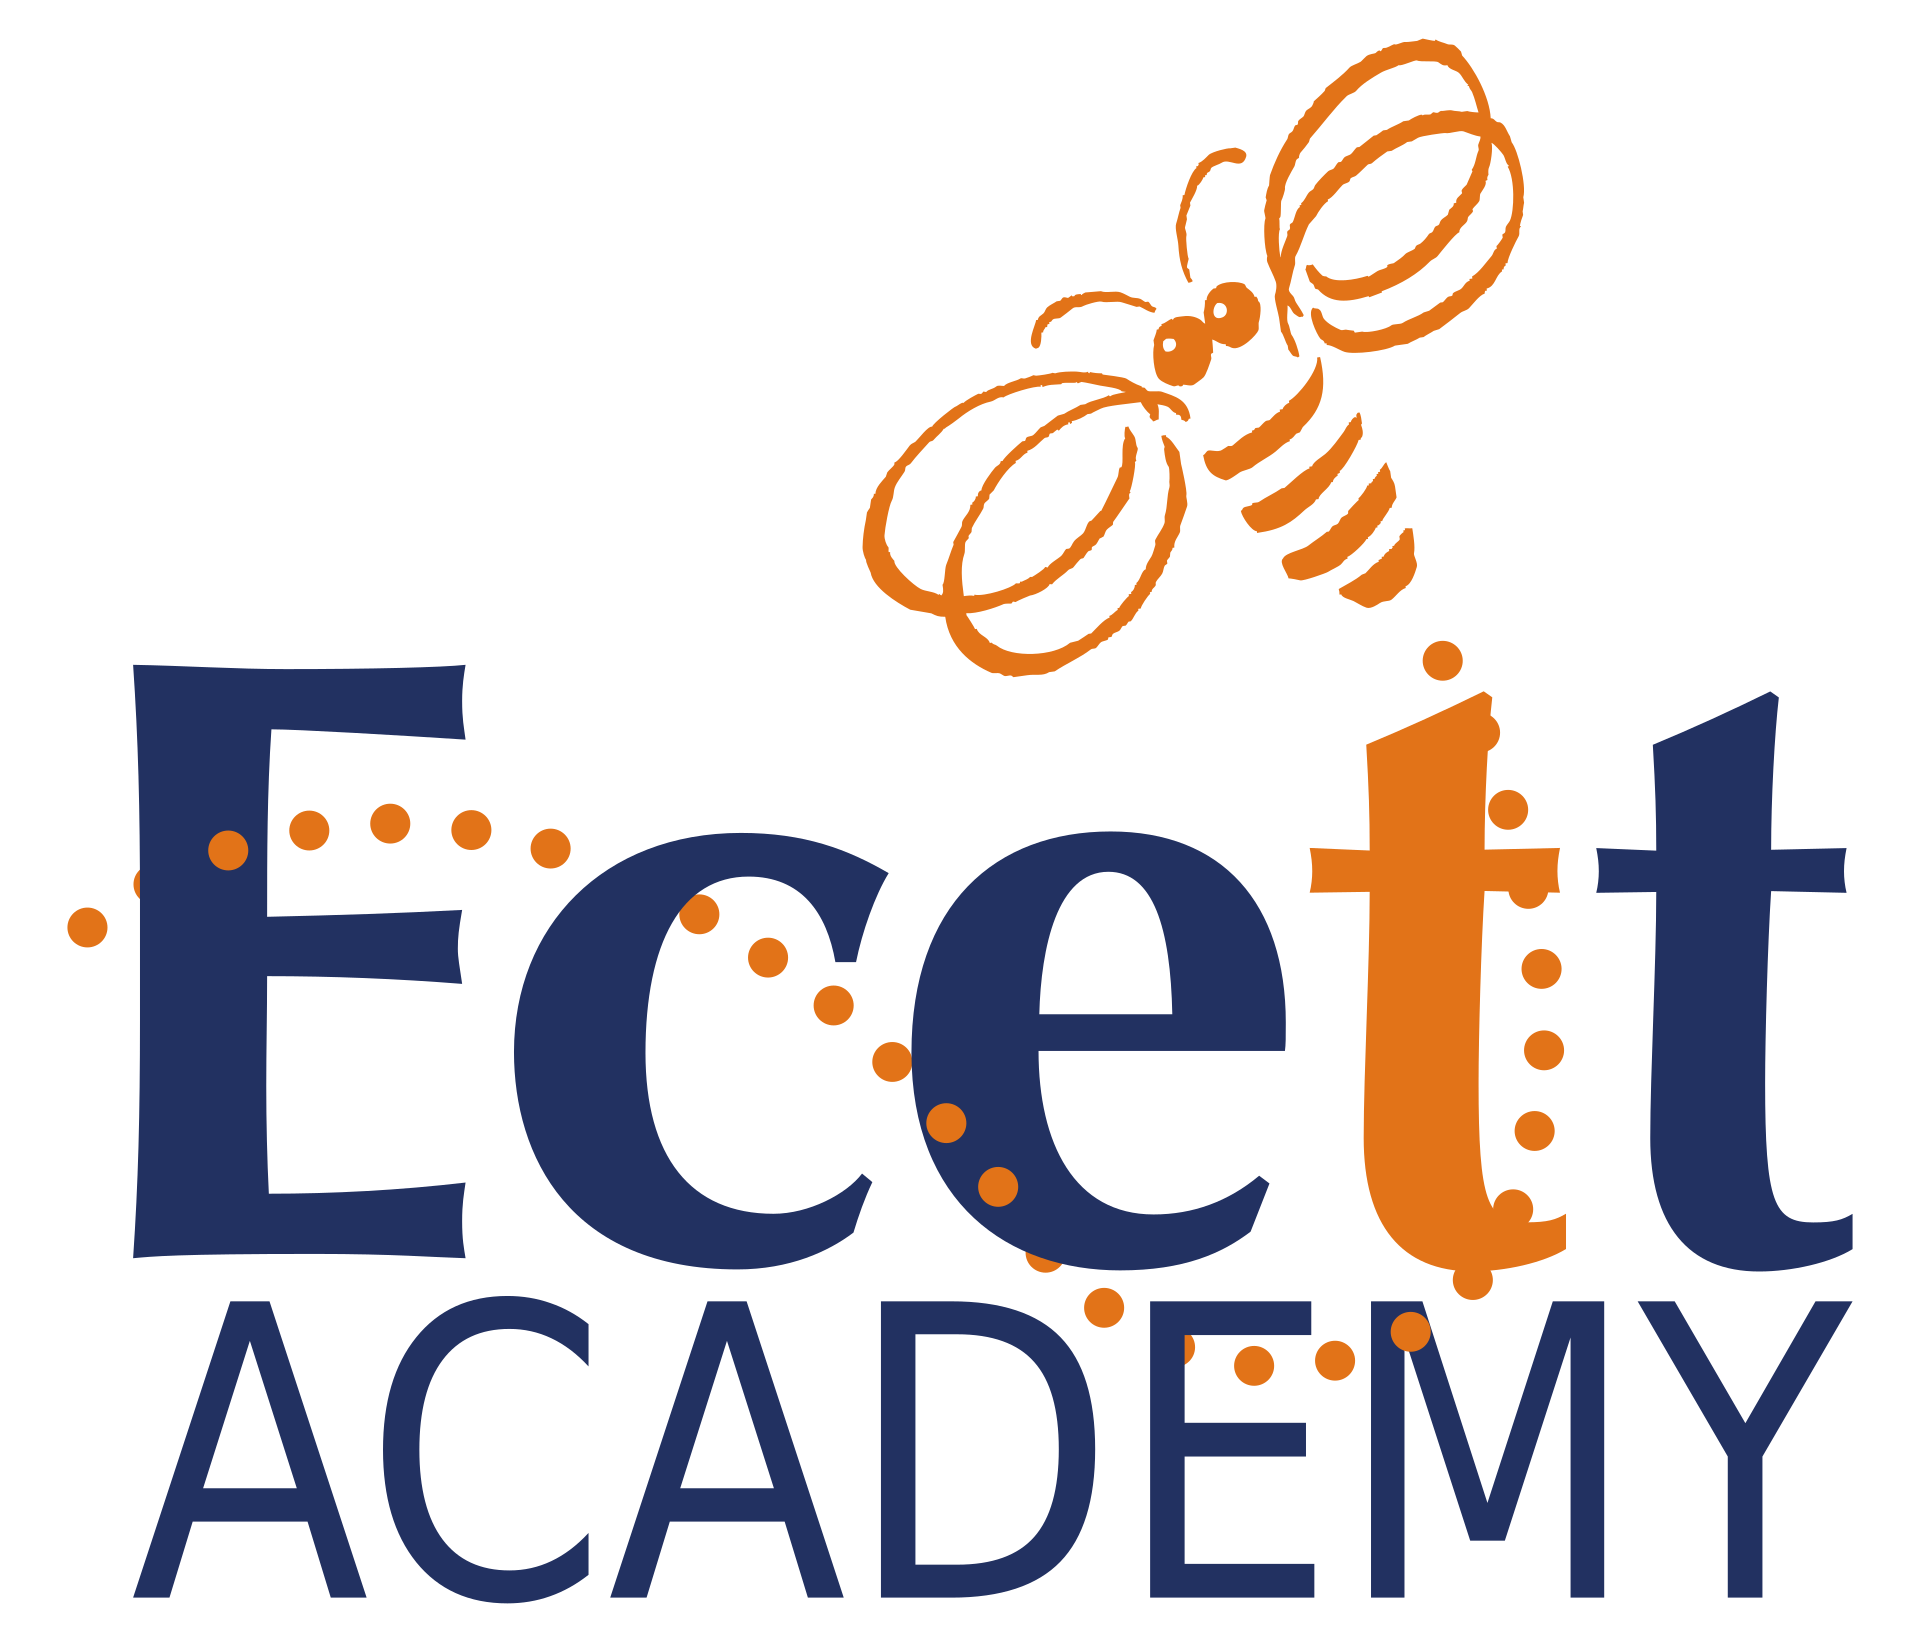 Ecett Academy